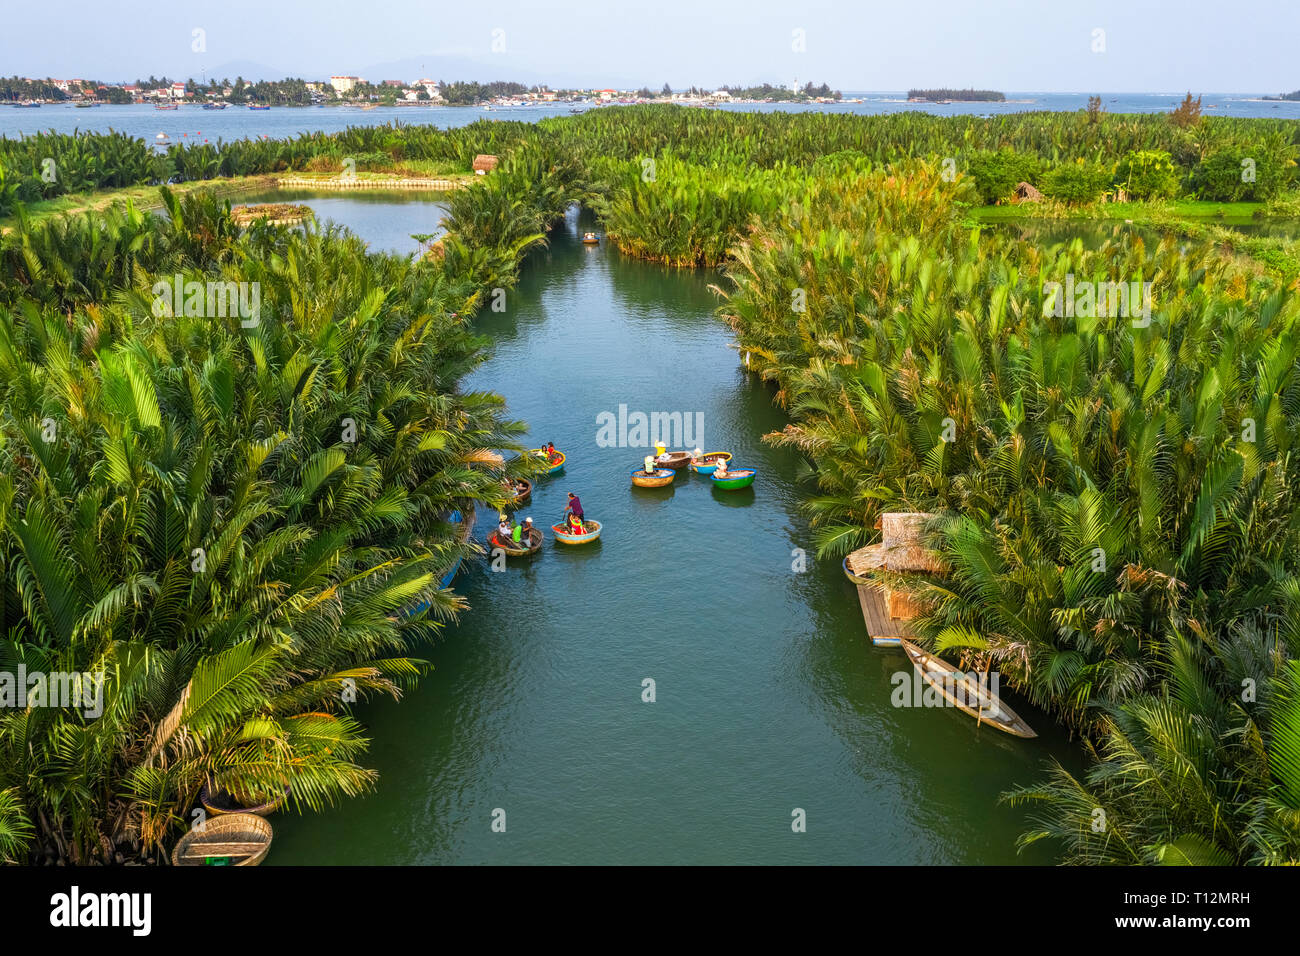 Vue aérienne, les touristes de la Chine, la Corée, l'Amérique, la Russie d'un panier à l'excursion en bateau à l'eau de noix de coco ( forêt de mangrove ) palm Hoi An, Quang Nam, Vietnam Banque D'Images